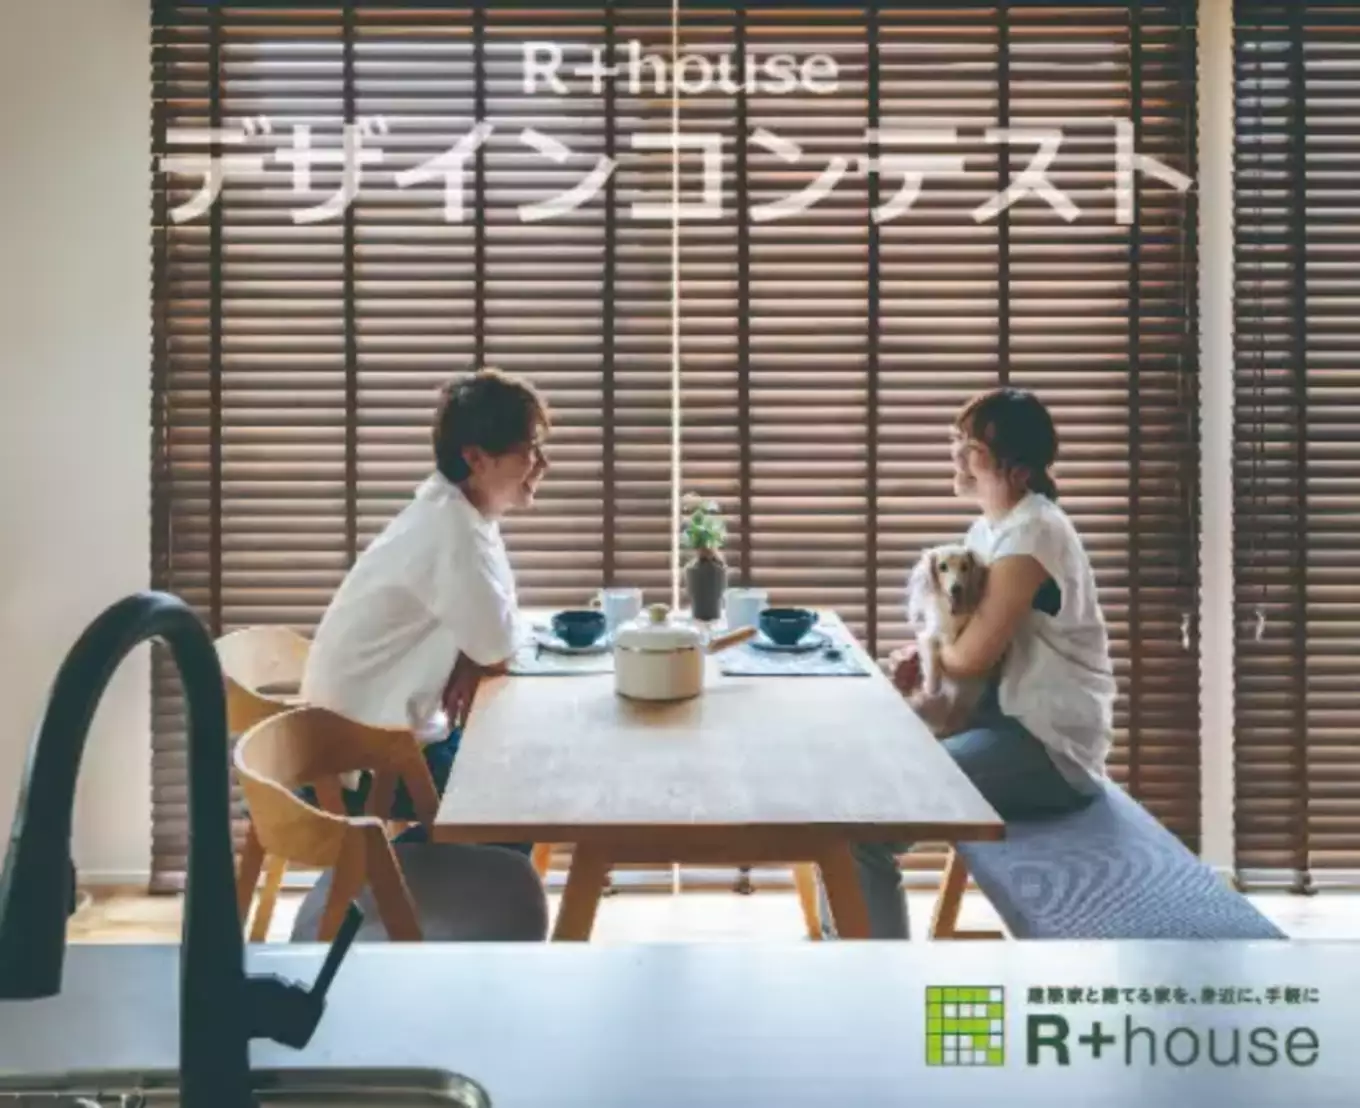 R+houseデザインコンテスト資料